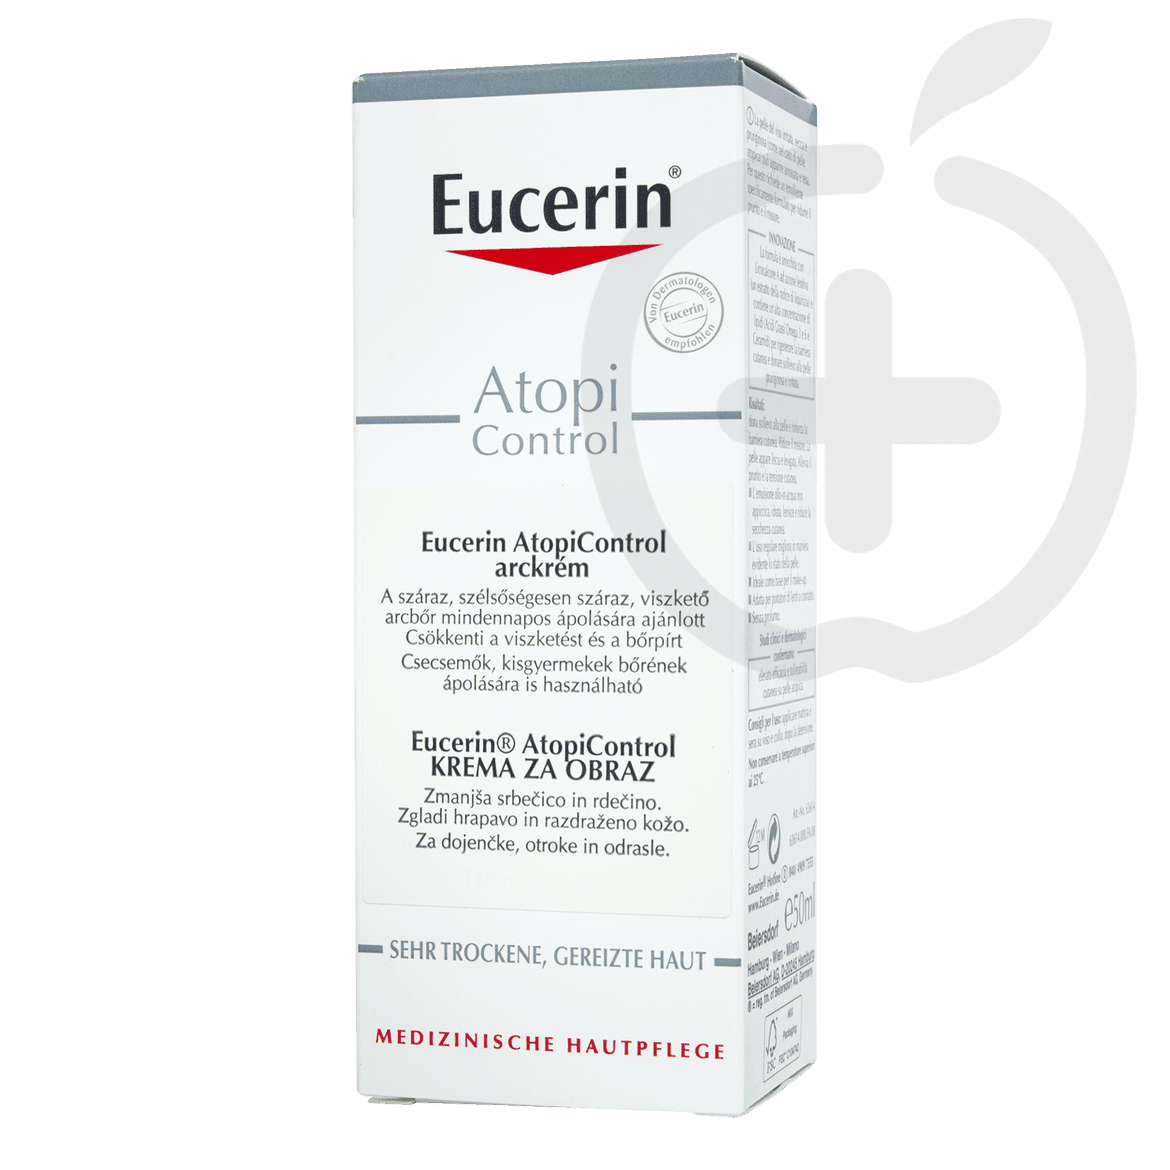 Eucerin Atopicontrol 12% Omega zsírsavas arckrém